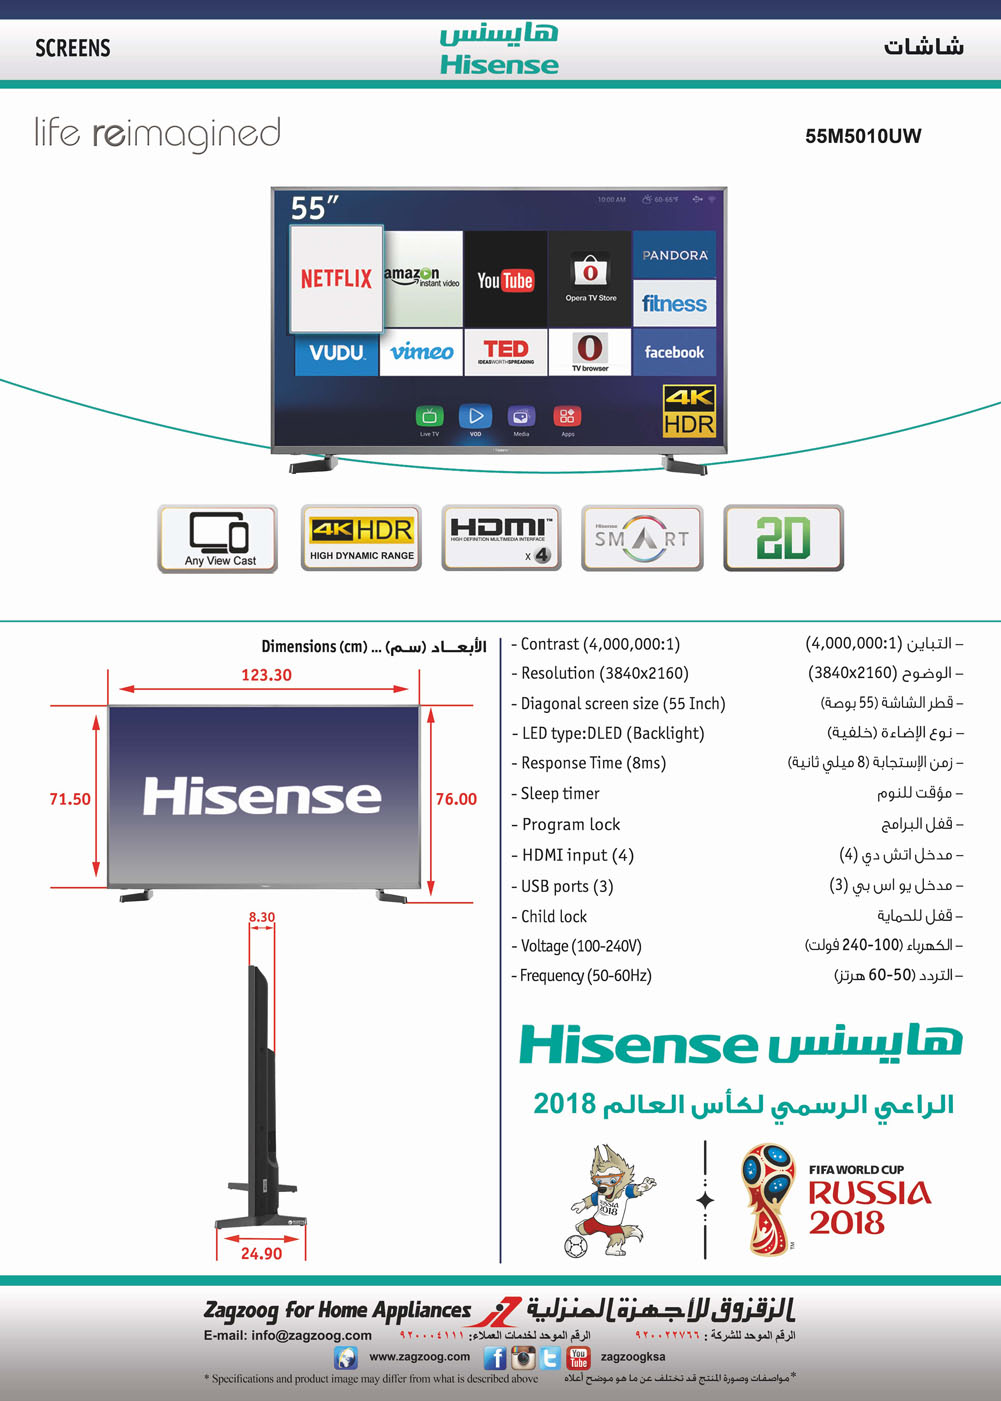 Hisense 55"DLED/4K HDR/SMRT/UTUBE/NTFLX